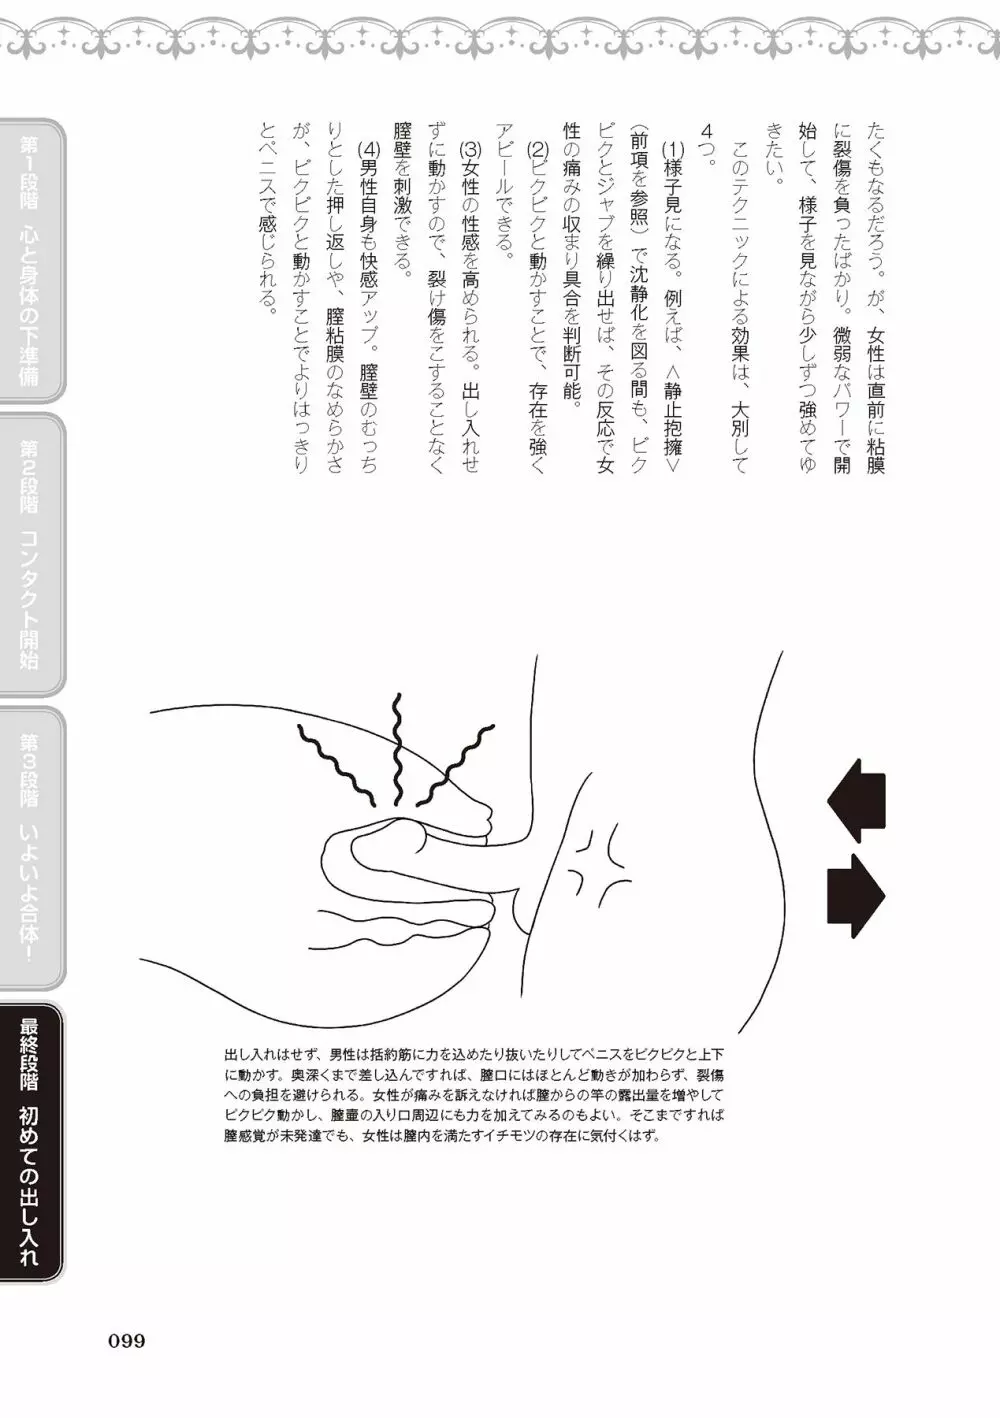 処女喪失・ロストヴァージンSEX完全マニュアル イラスト版……初エッチ 101ページ